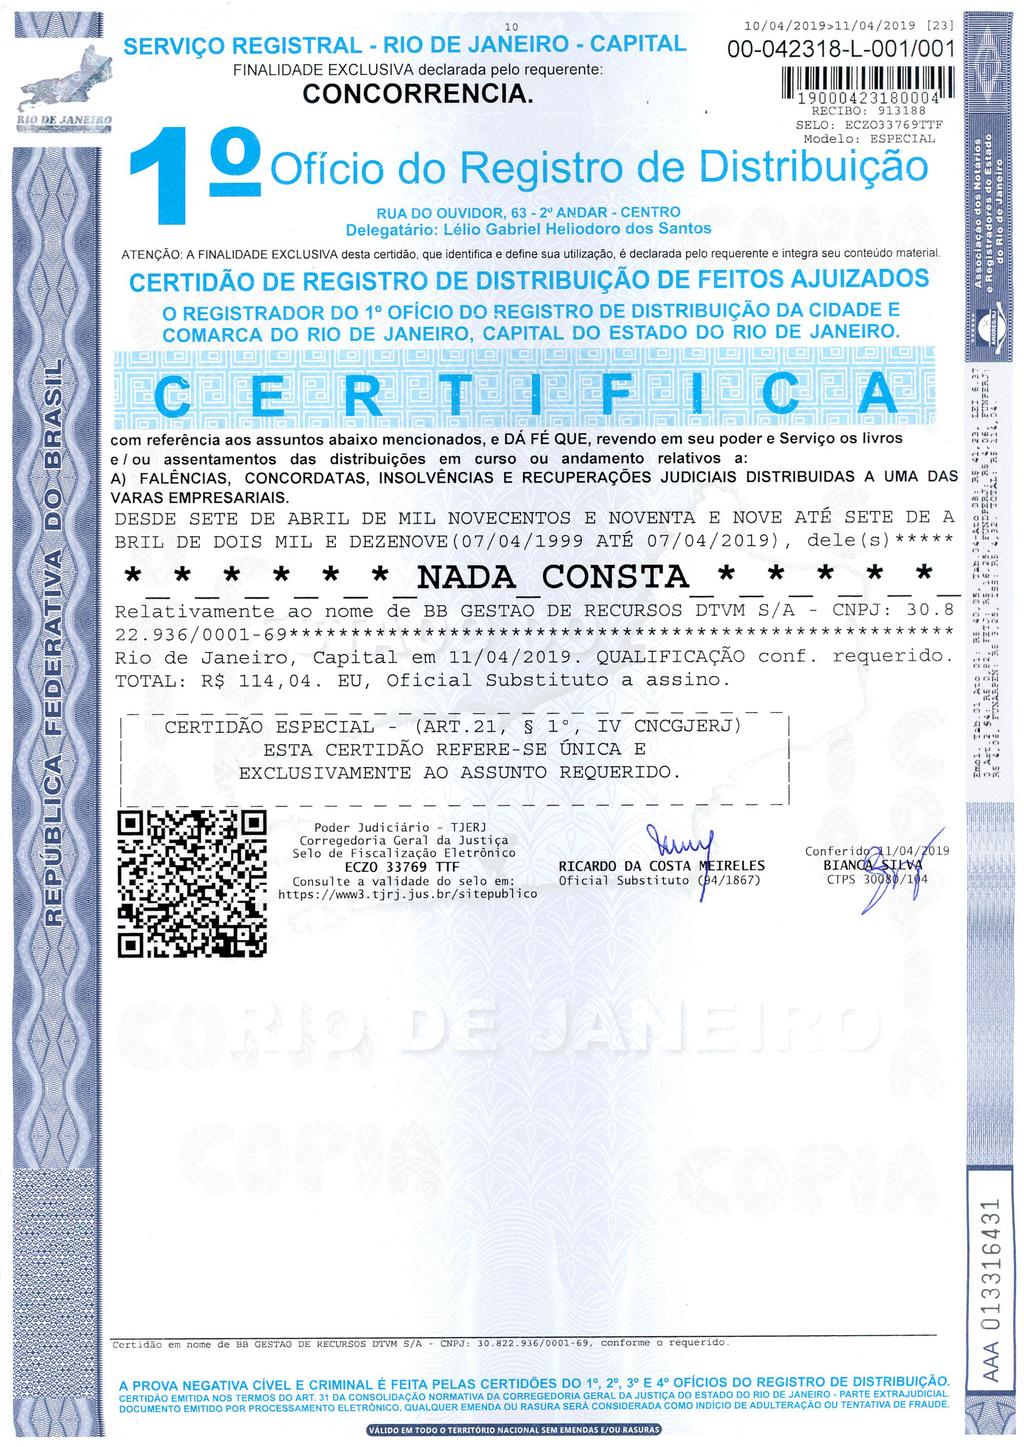 WoPEJAAWS0 g-, ~8~ 901 10 SERVIÇO REGISTRAL - RIO DE JANEIRO - CAPITAL FINALIDADE EXCLUSIVA declarada pelo requerente: CONCORRENCIA.